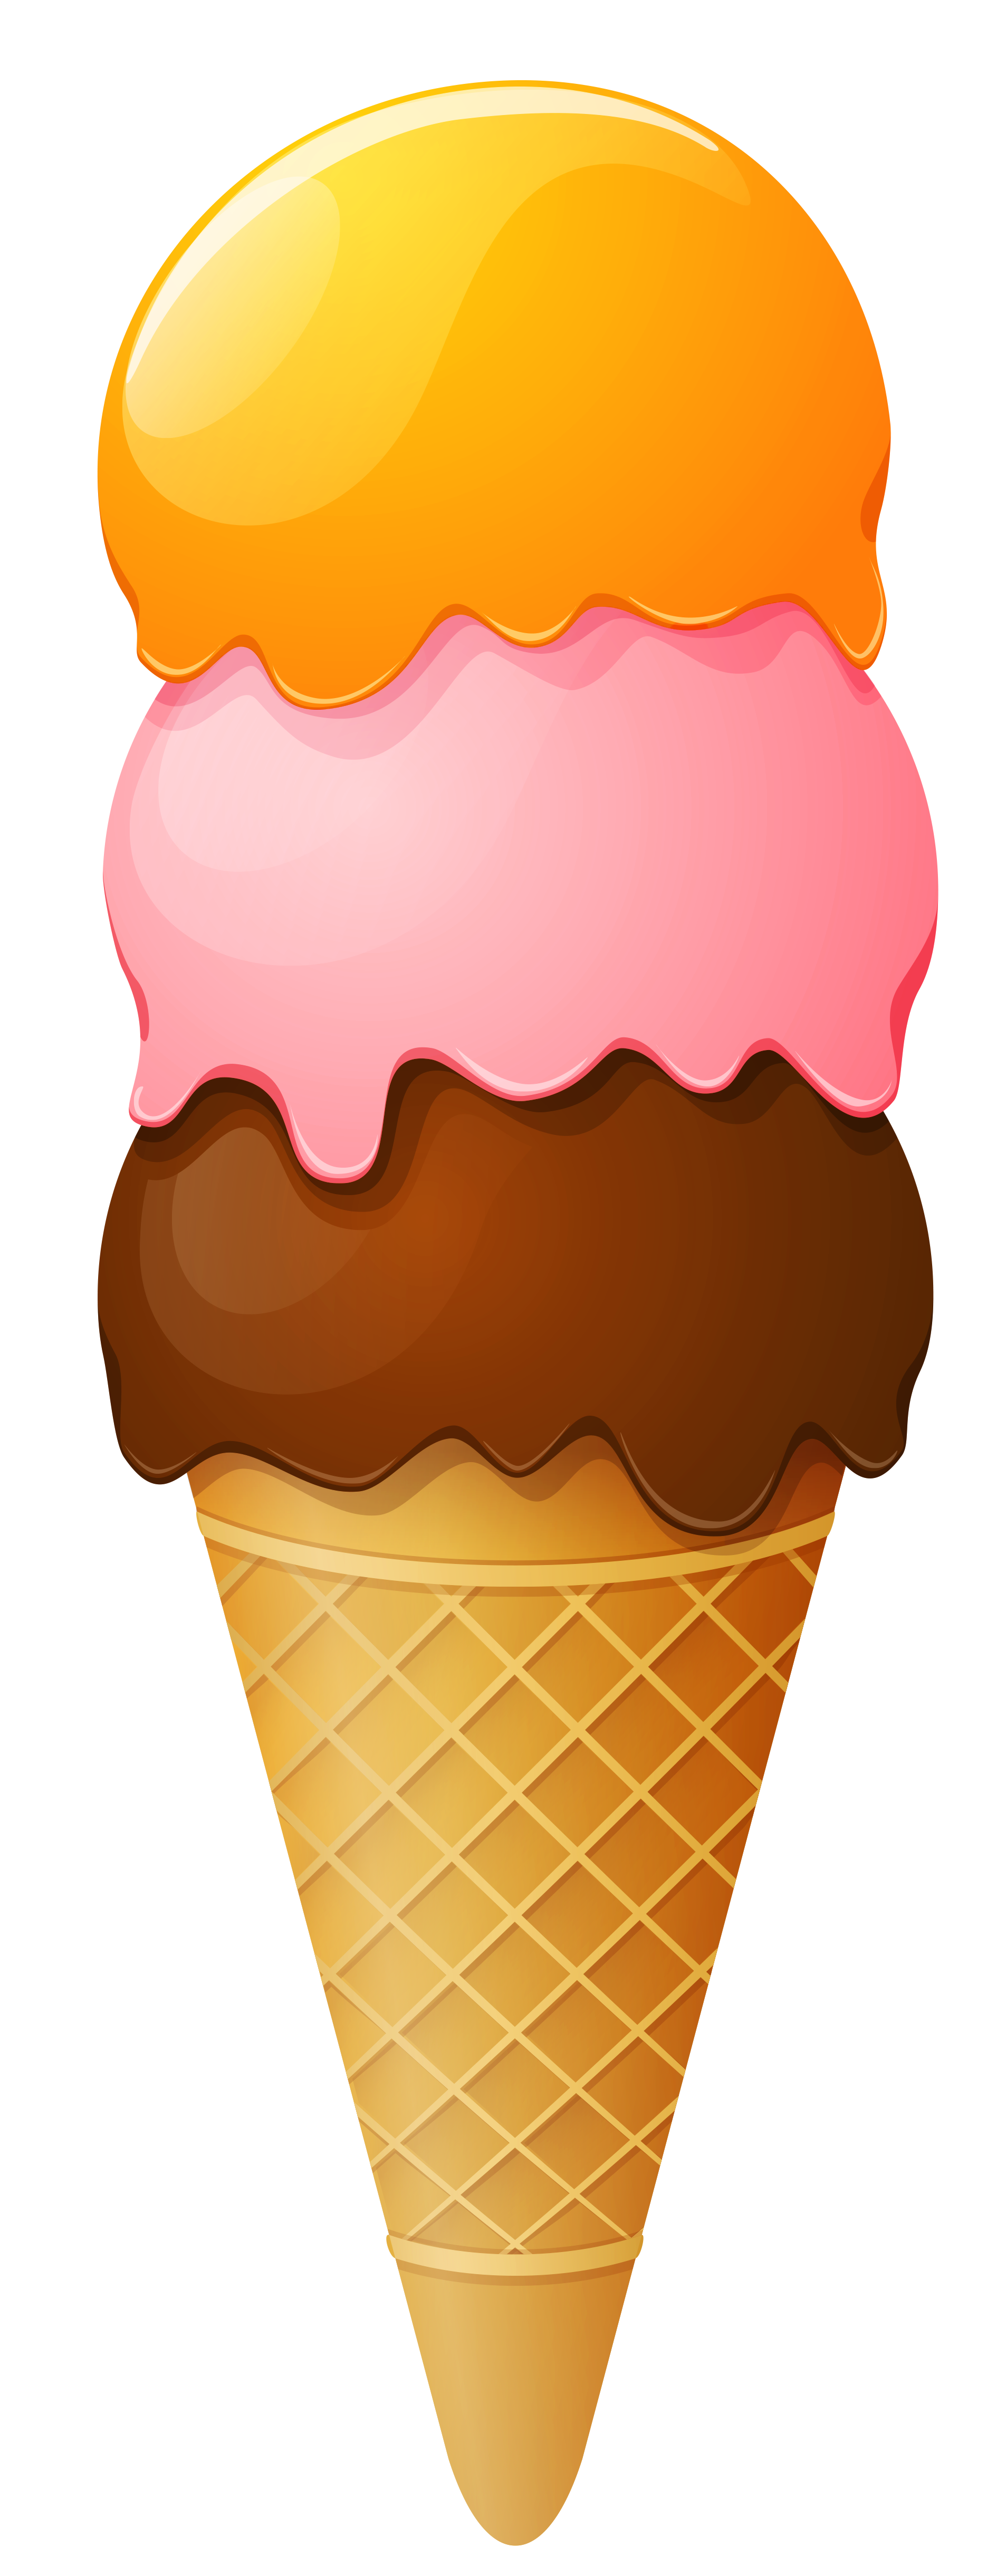 Desserts clipart land. Transparent ice cream cone